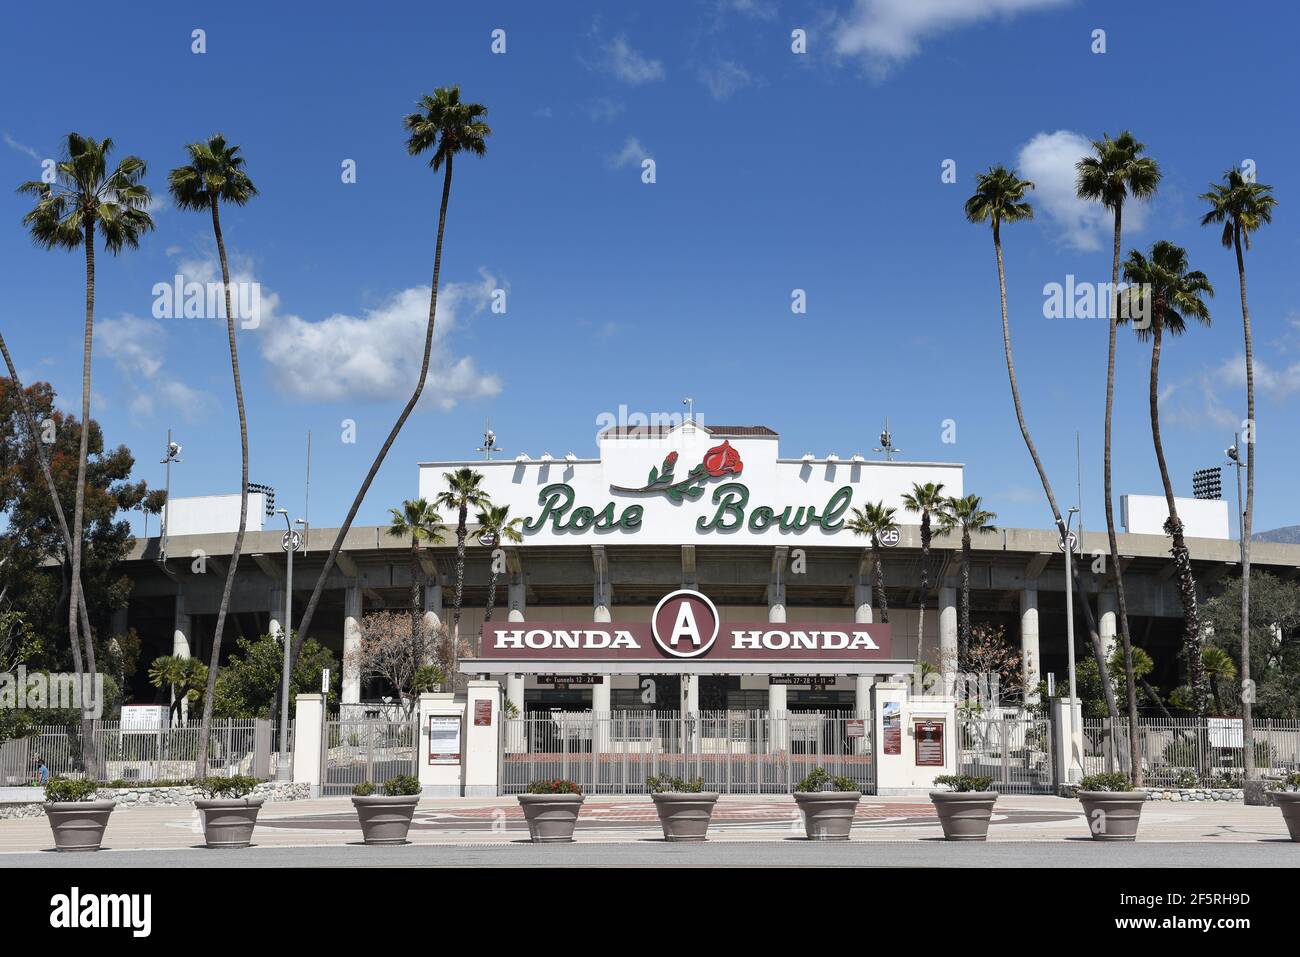 PASADENA, CALIFORNIA - 26 MAR 2021: La puerta principal en el estadio de fútbol Rose Bowl. Foto de stock